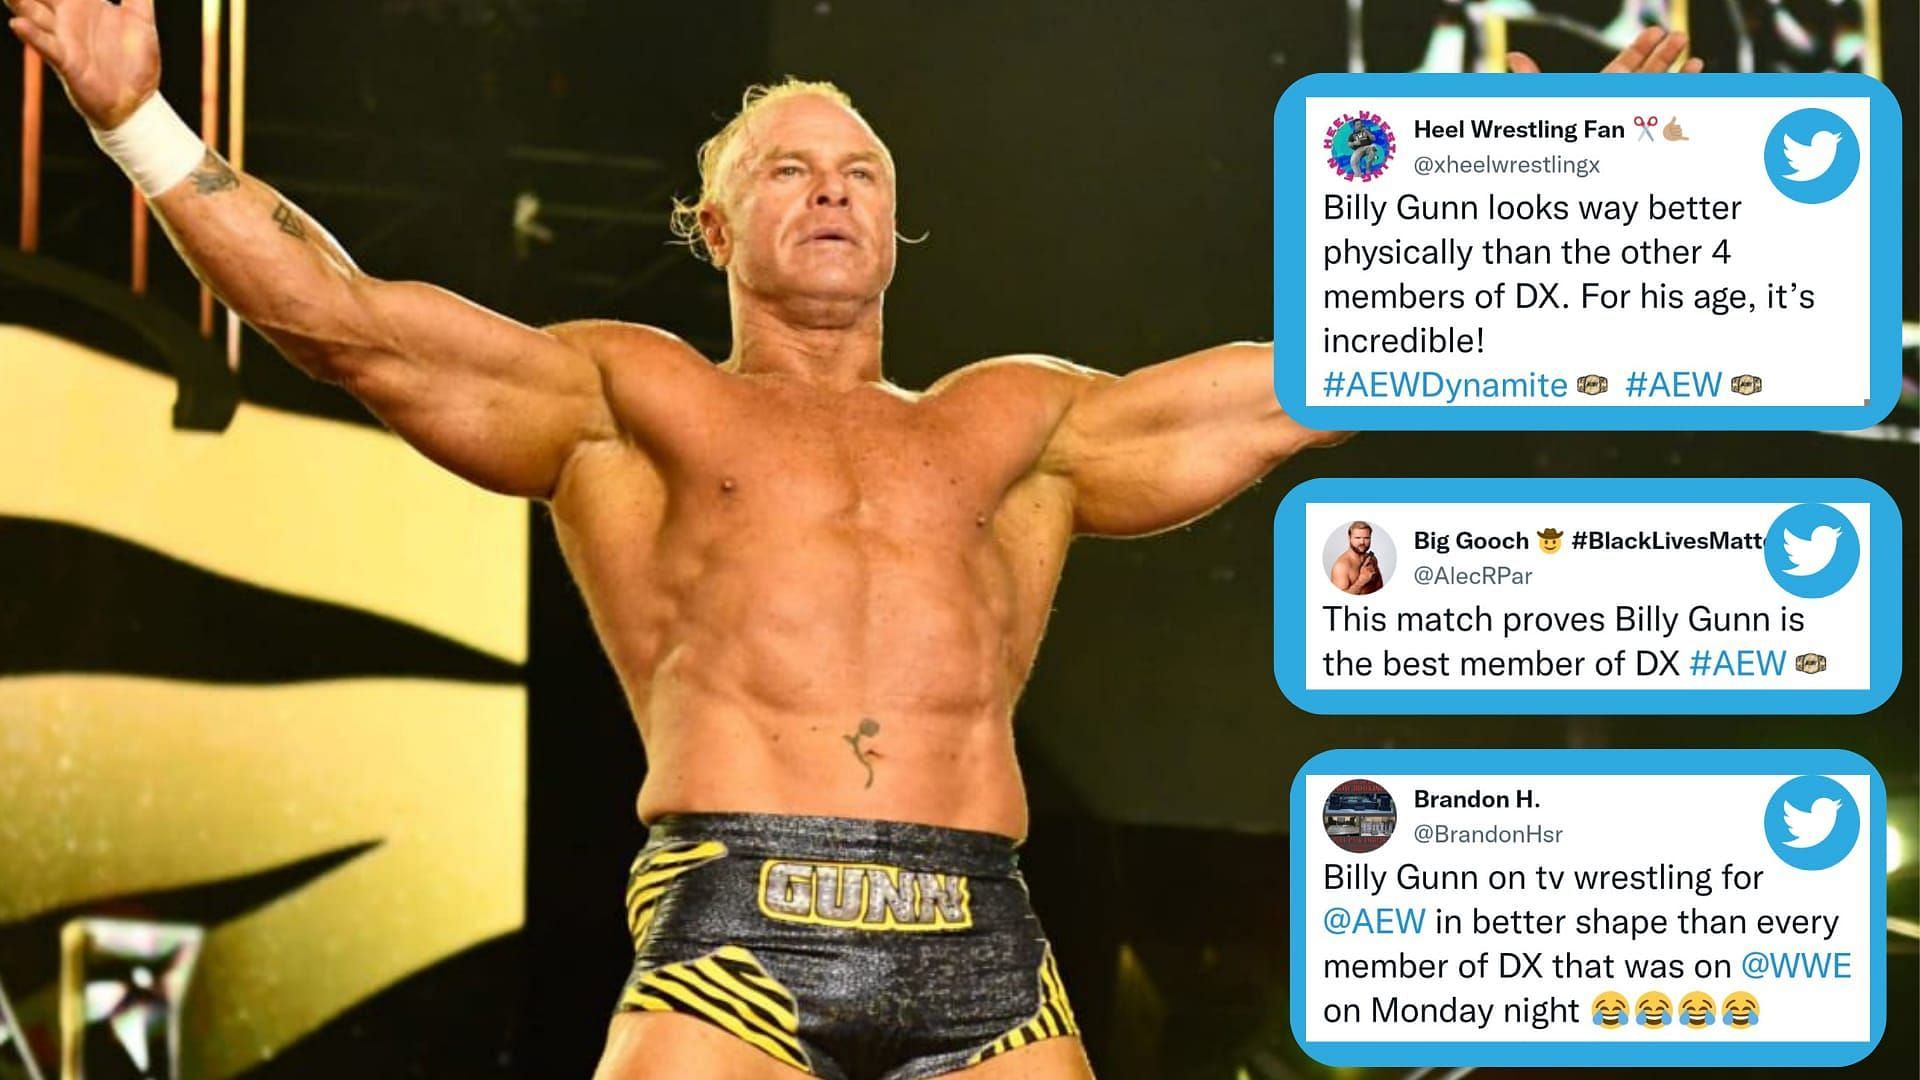 Billy Gunn had a sensational performance against a former WWE star on AEW Dynamite.